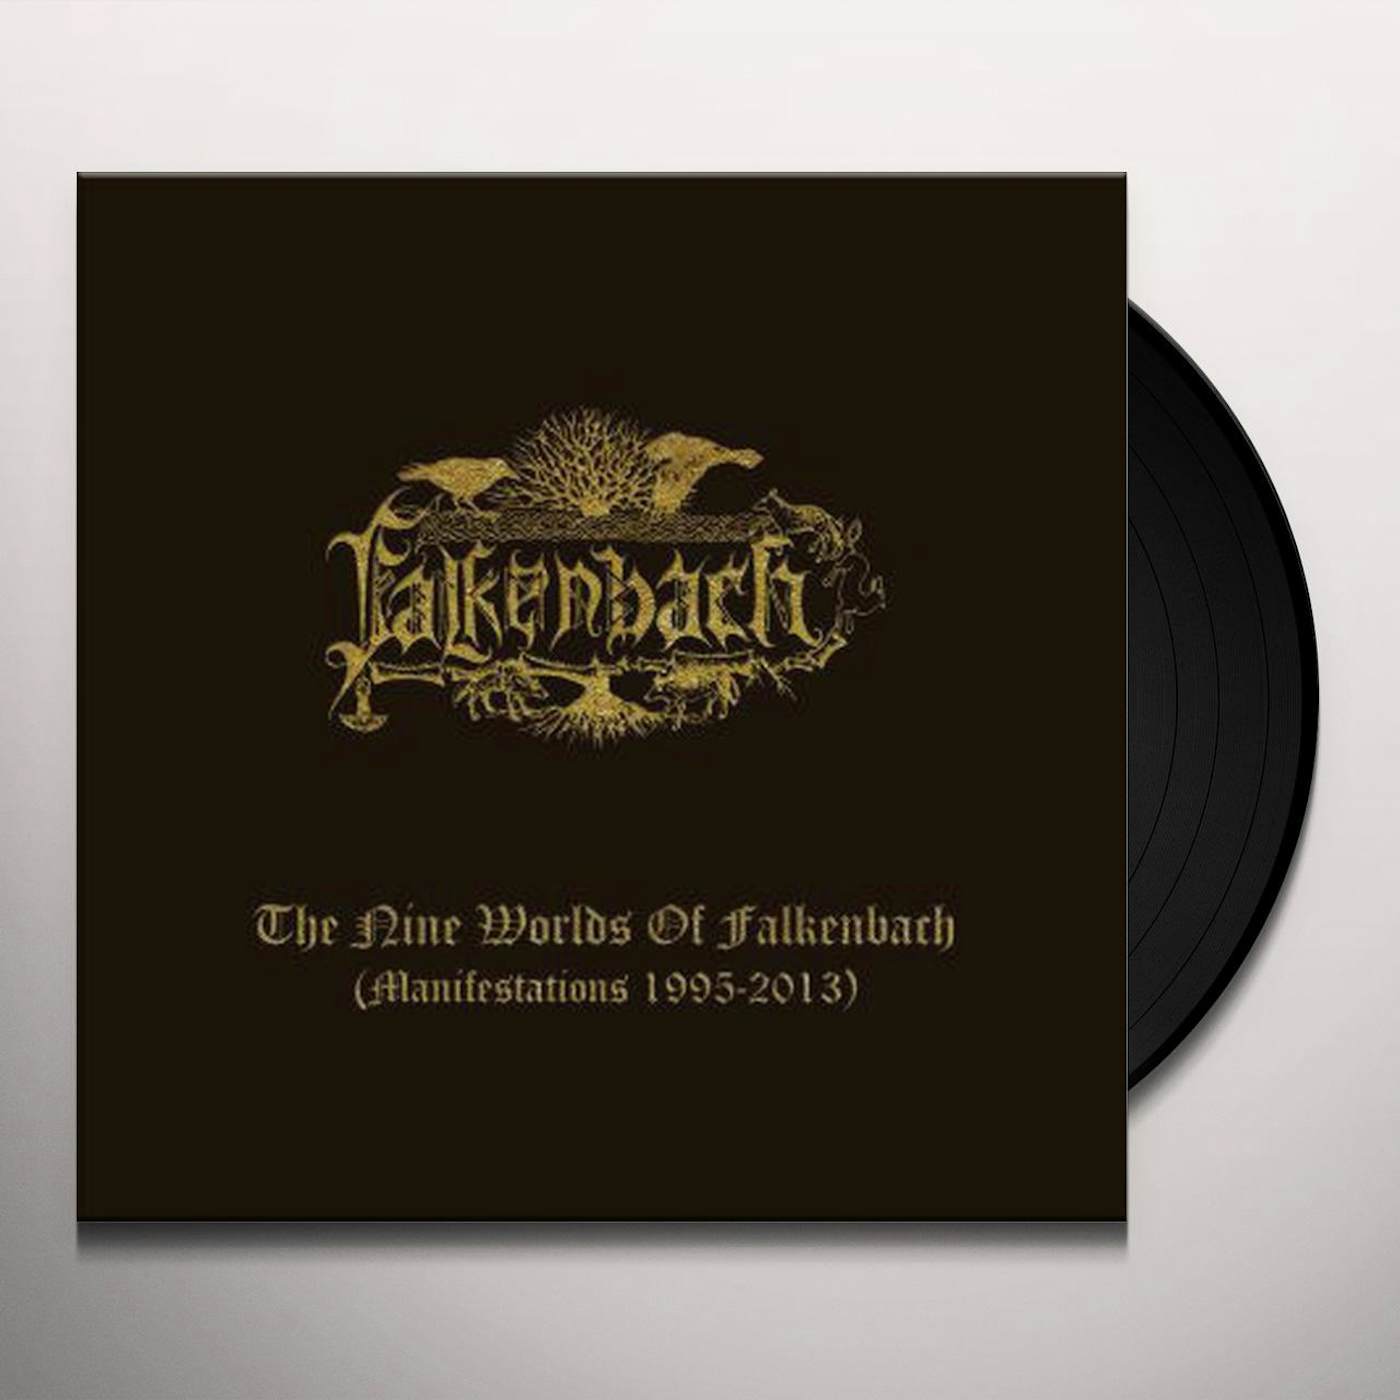 Nine Worlds Of Falkenbach (Manifestation Vinyl Record